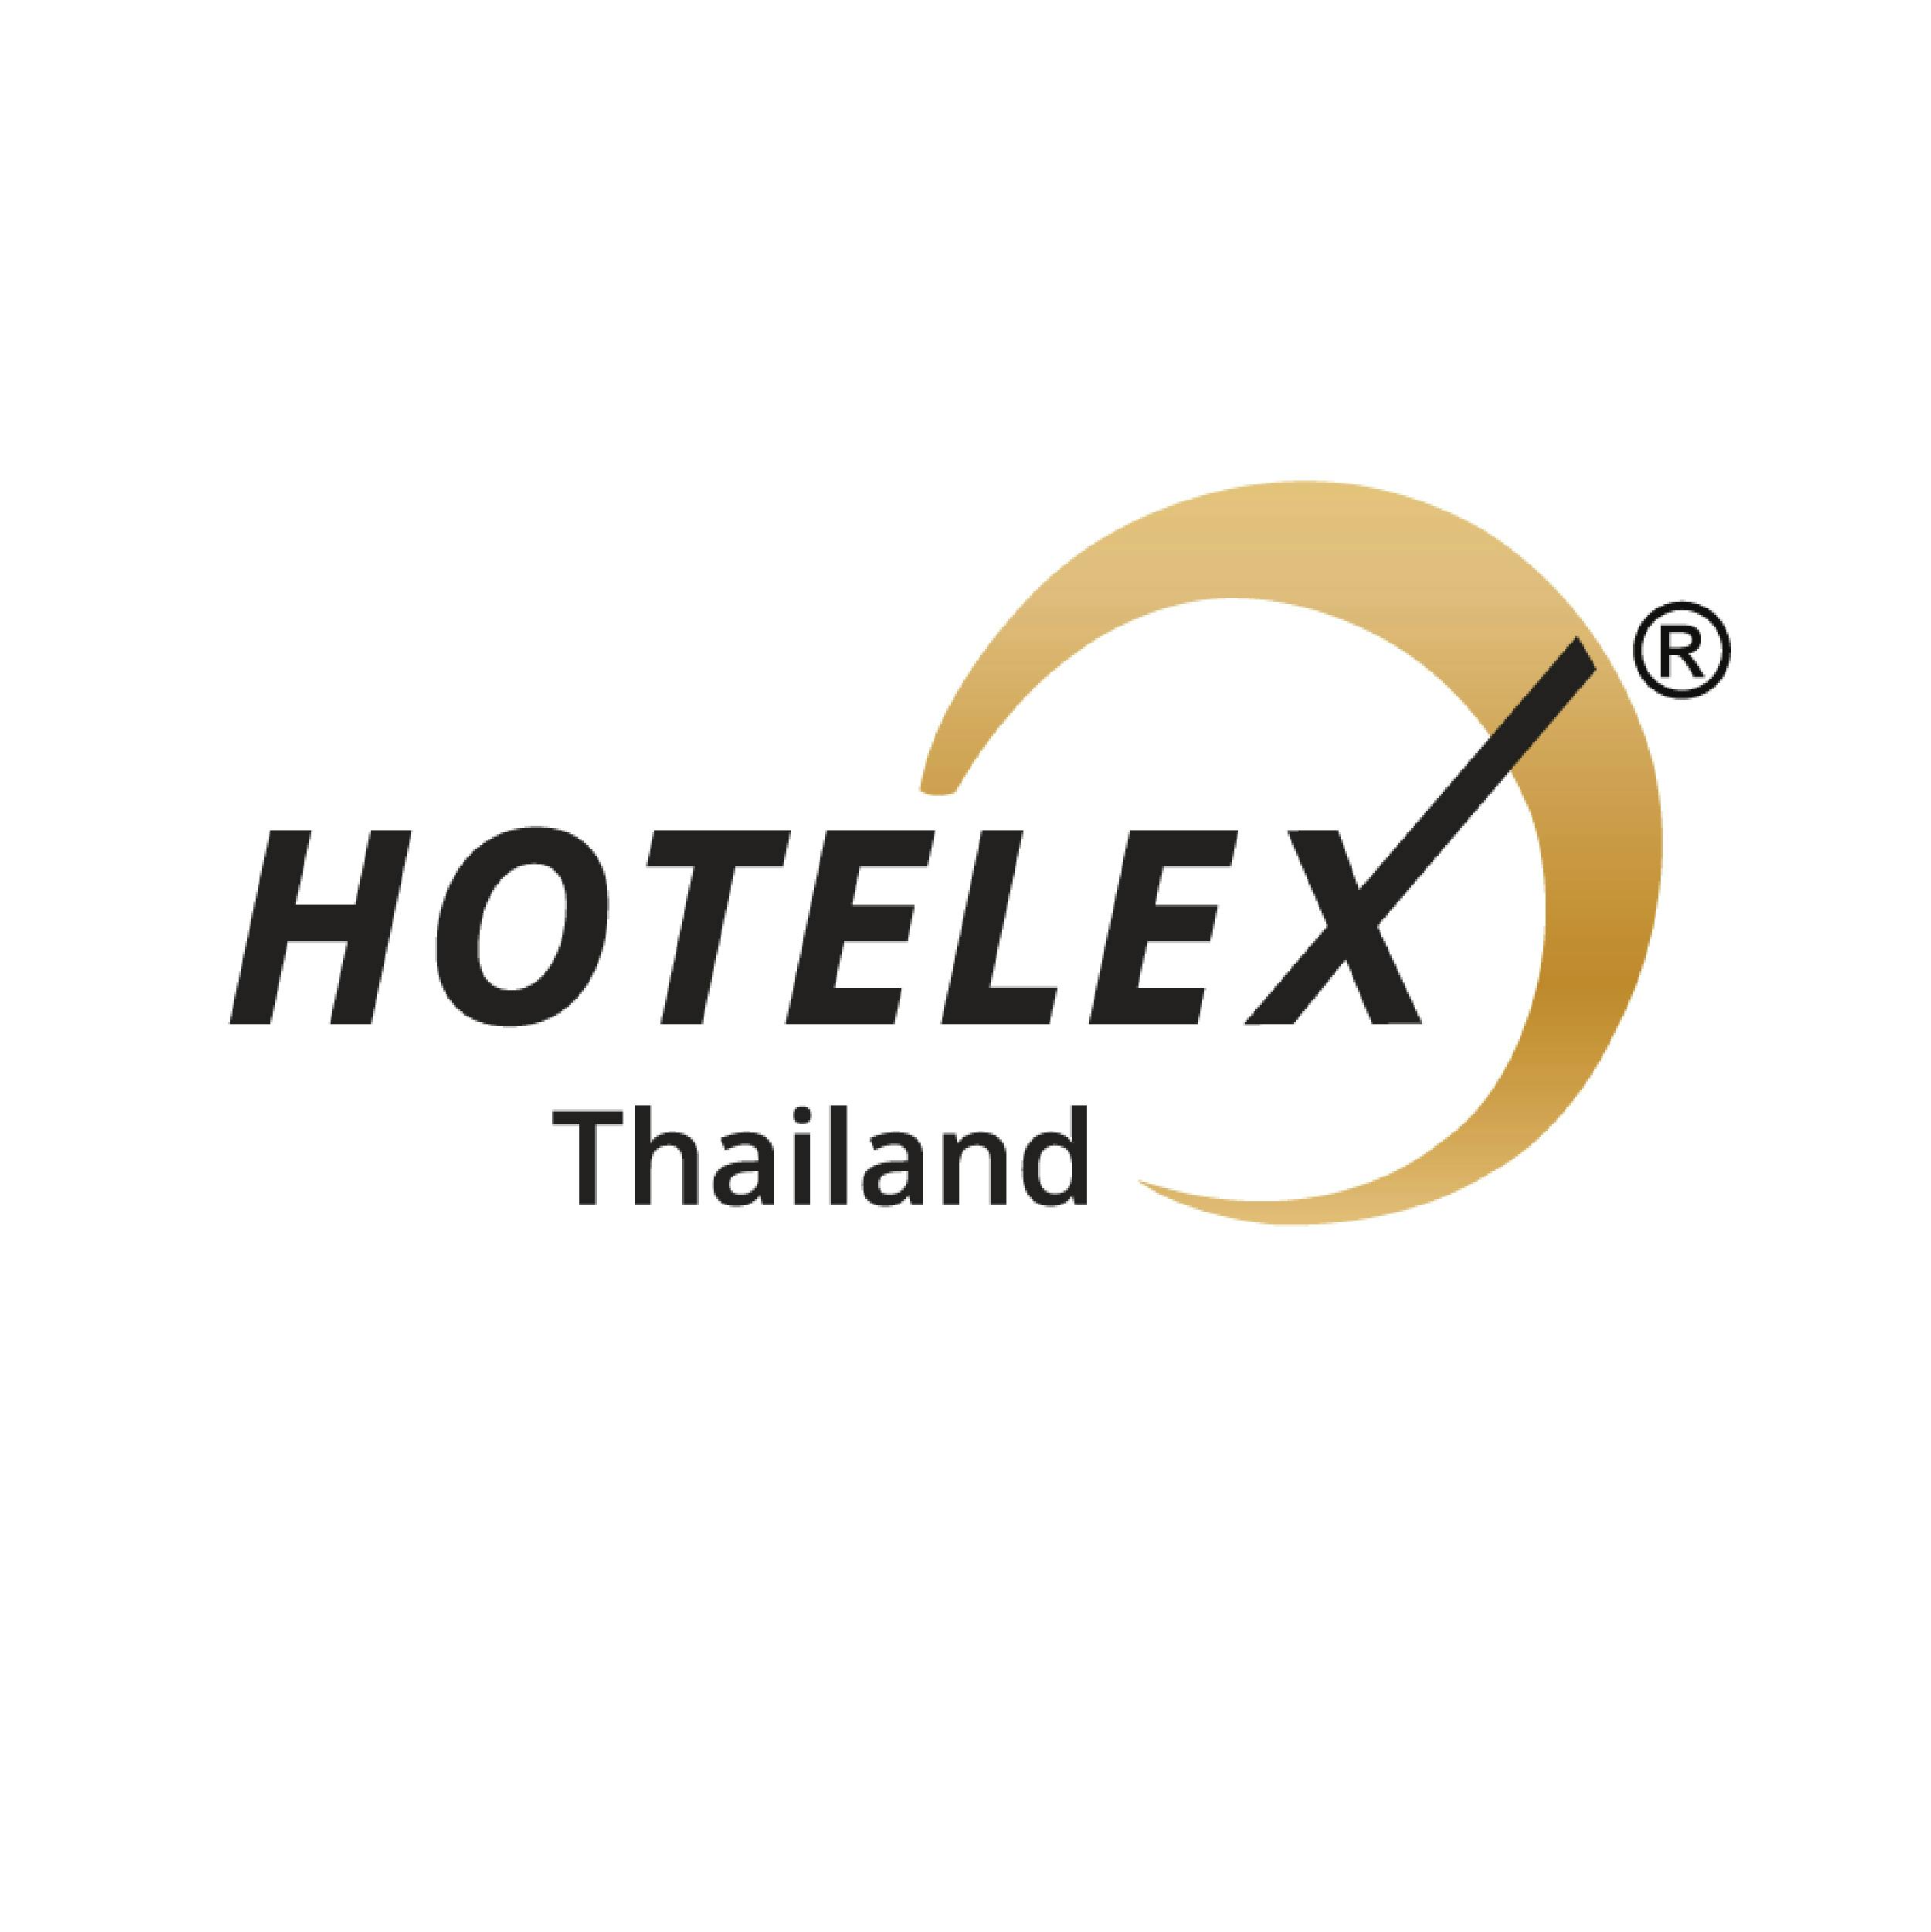 HOTELEX Thailand